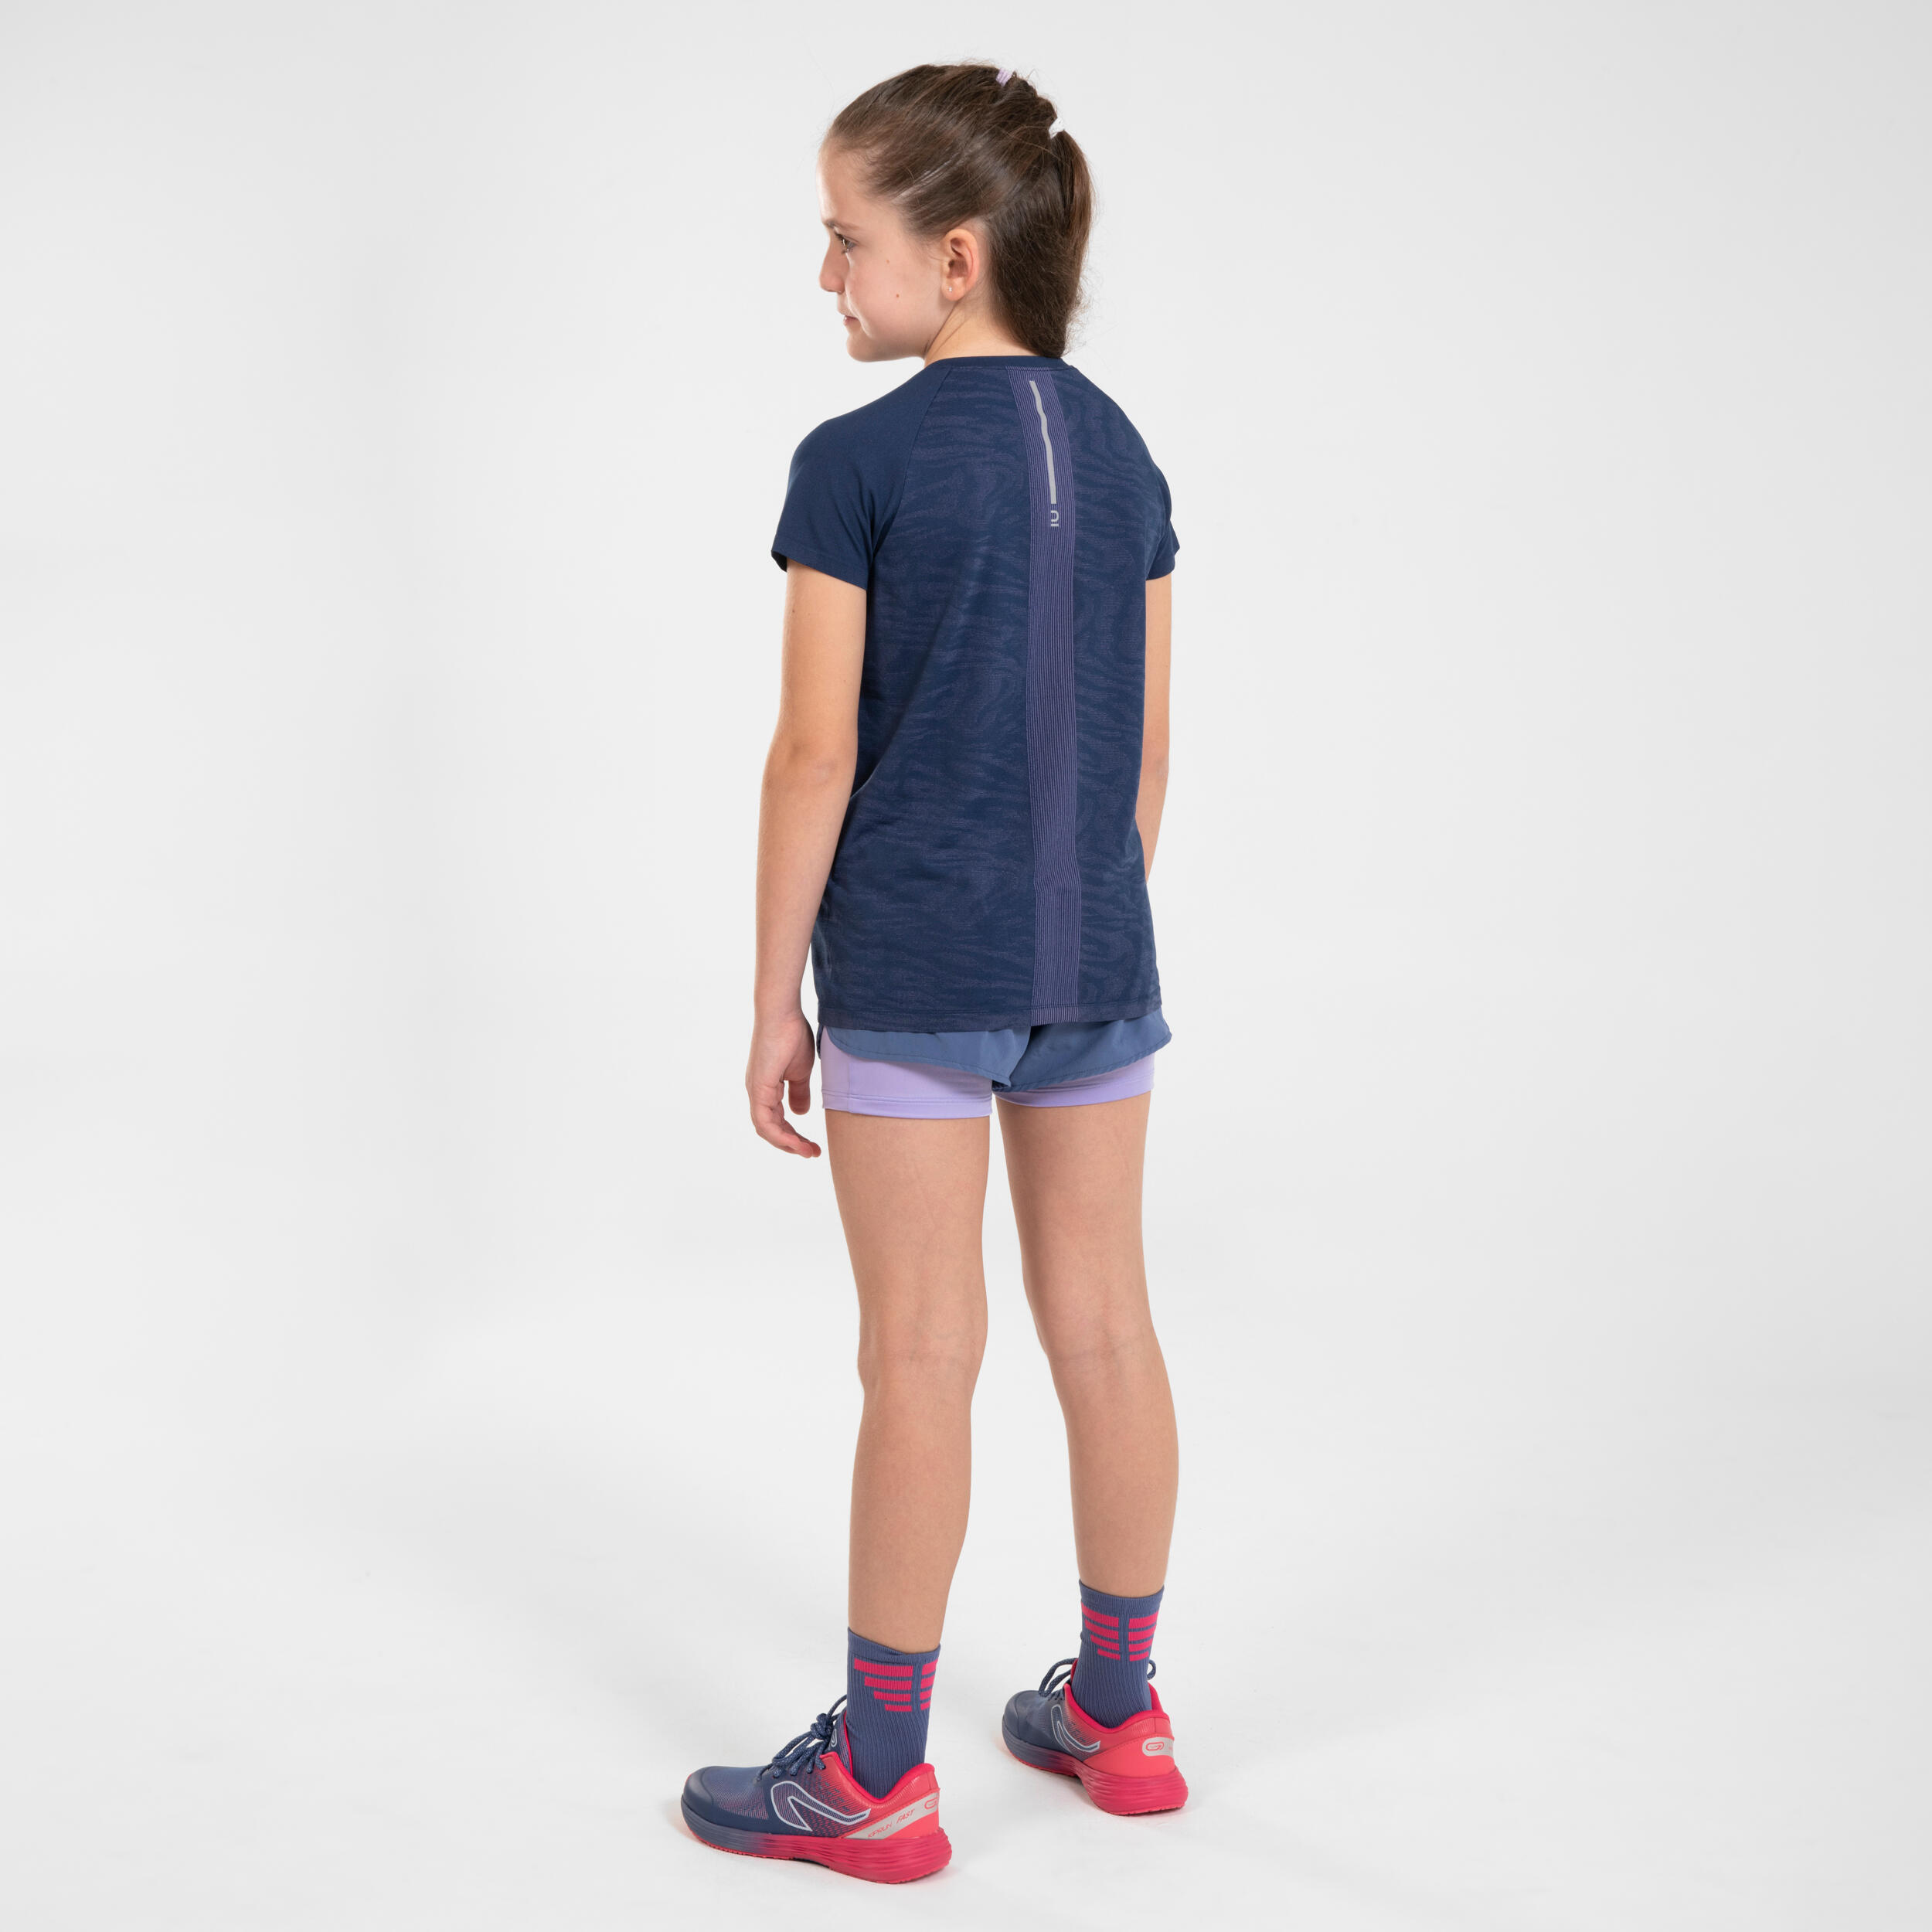  KIPRUN CARE Girls' Seamless Running T-shirt - Navy 10/10